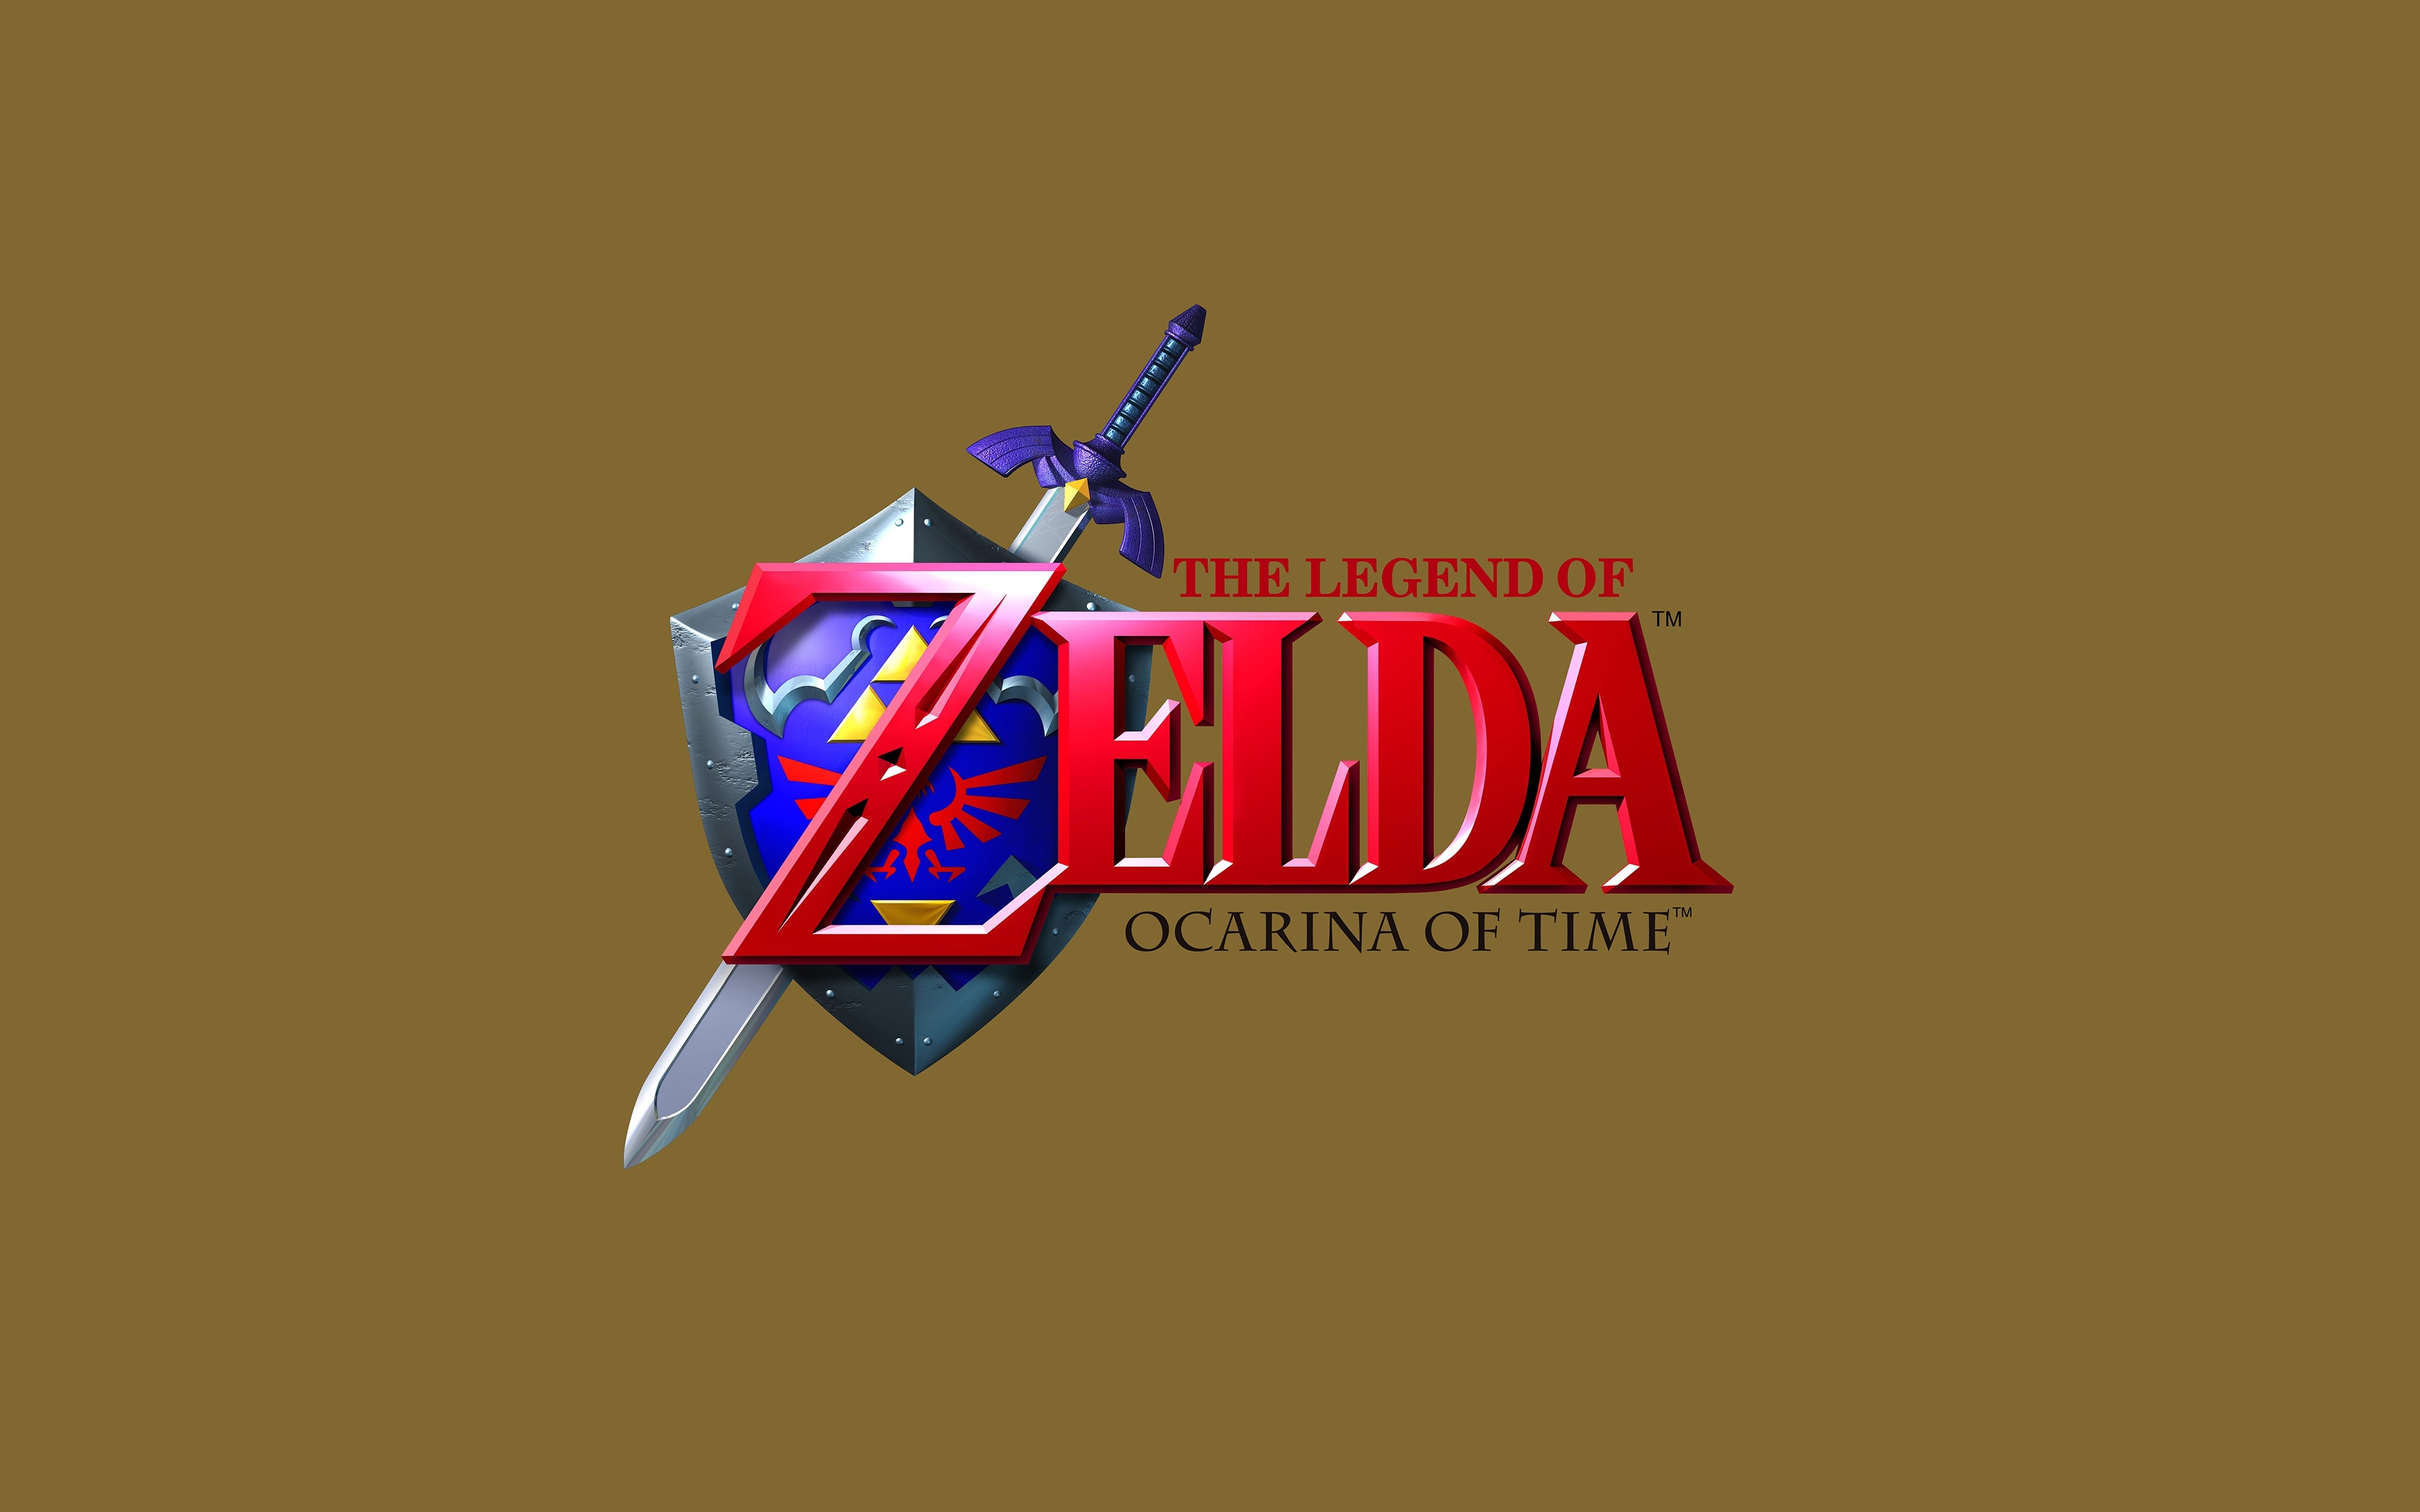 the legend of Zelda logo Zelda font